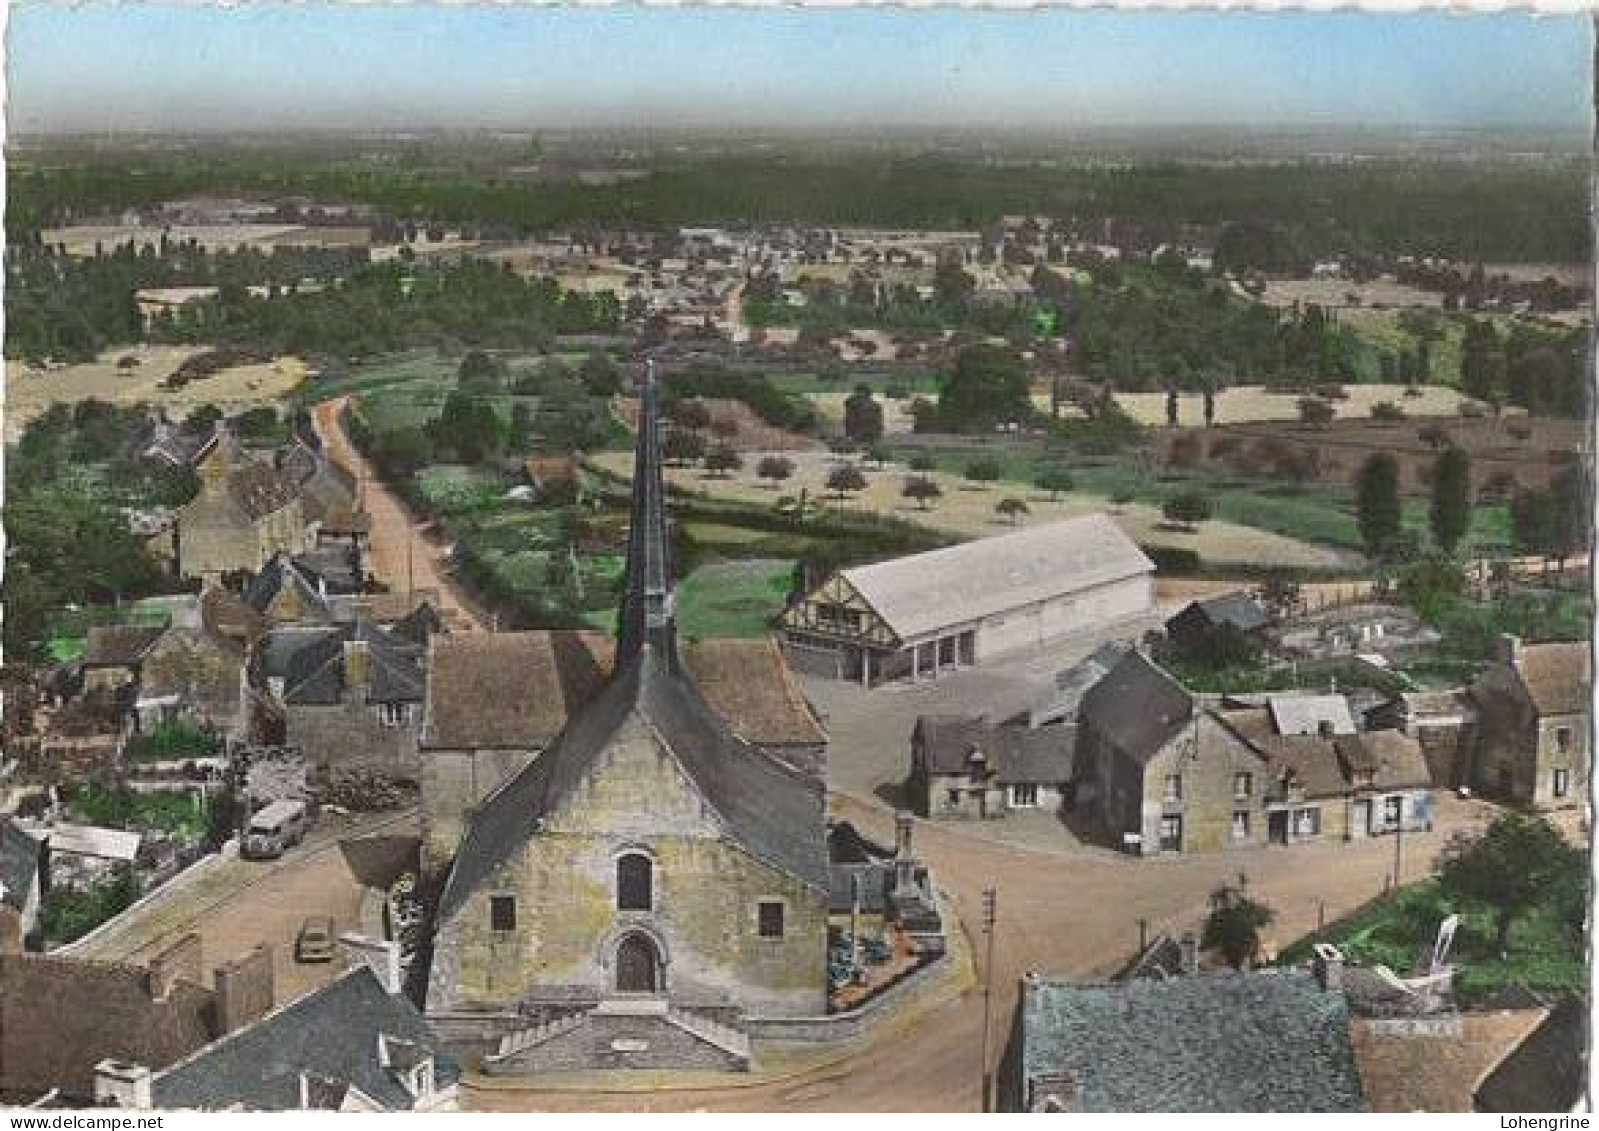 Saint Juvat St, Vue Aérienne Sur Le Quartier De L'église Vue Générale - Saint-Juvat